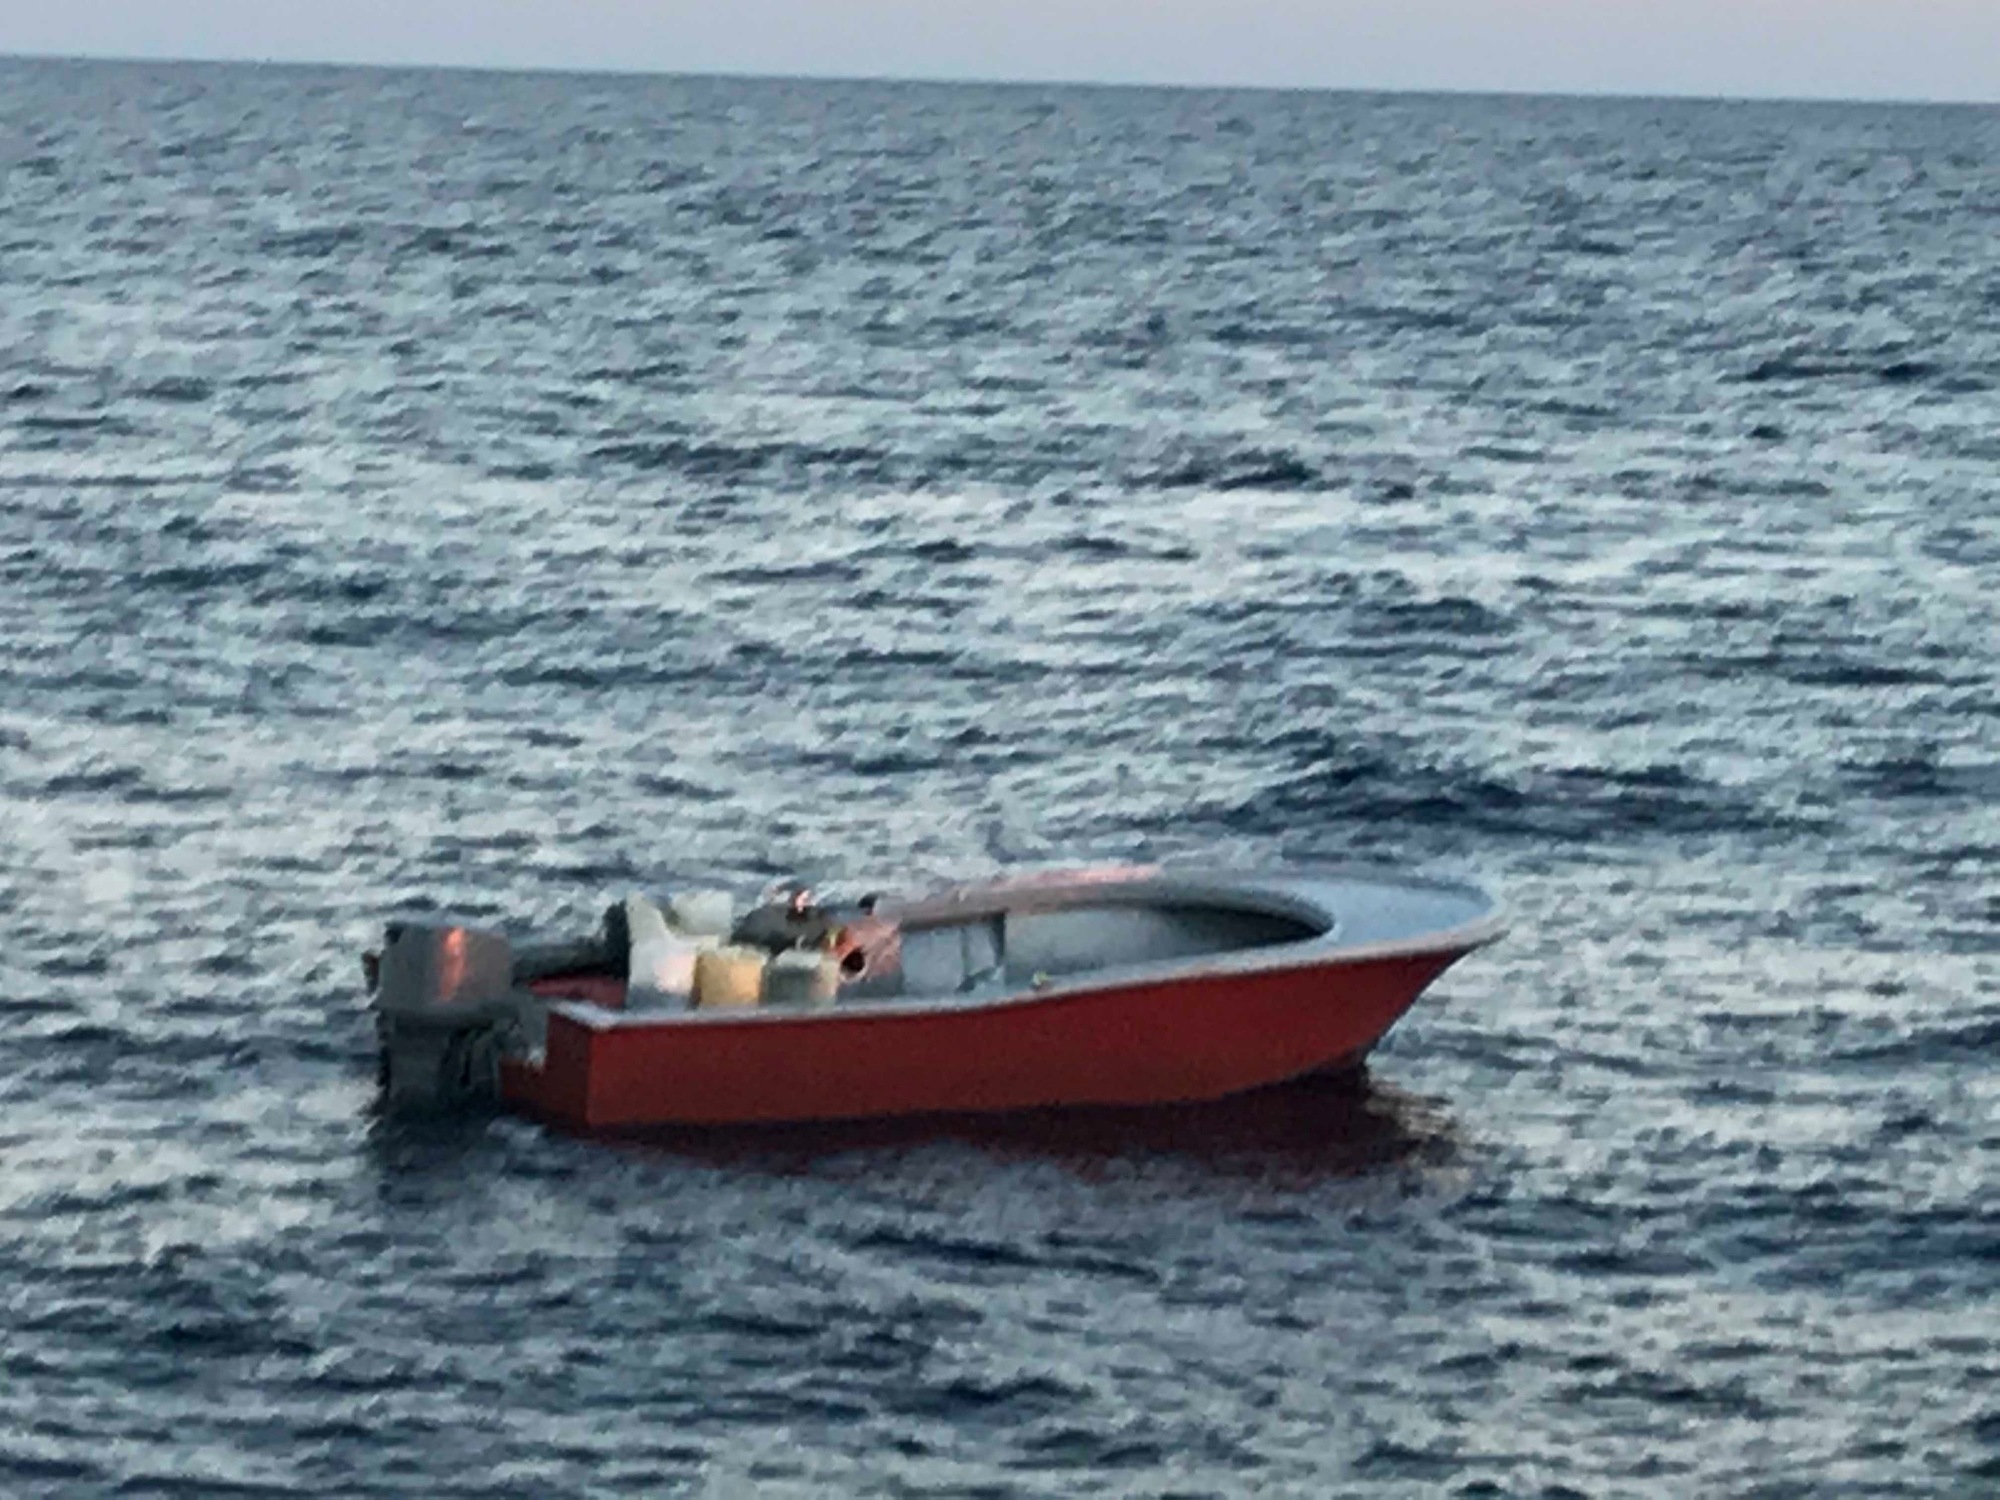 Coast Guard interdicts 5 migrants near Jupiter, FL